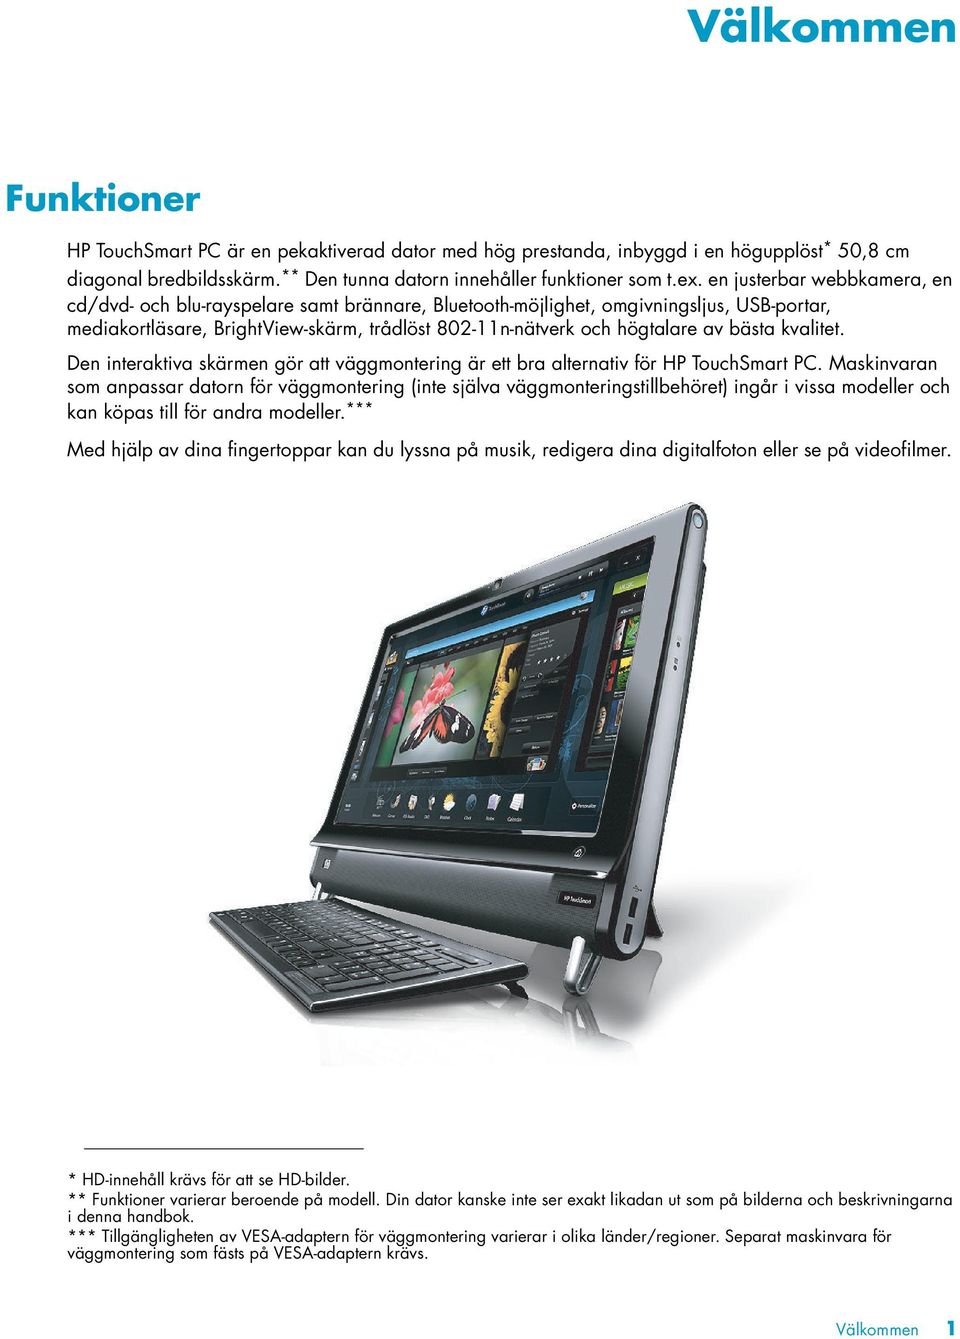 bästa kvalitet. Den interaktiva skärmen gör att väggmontering är ett bra alternativ för HP TouchSmart PC.